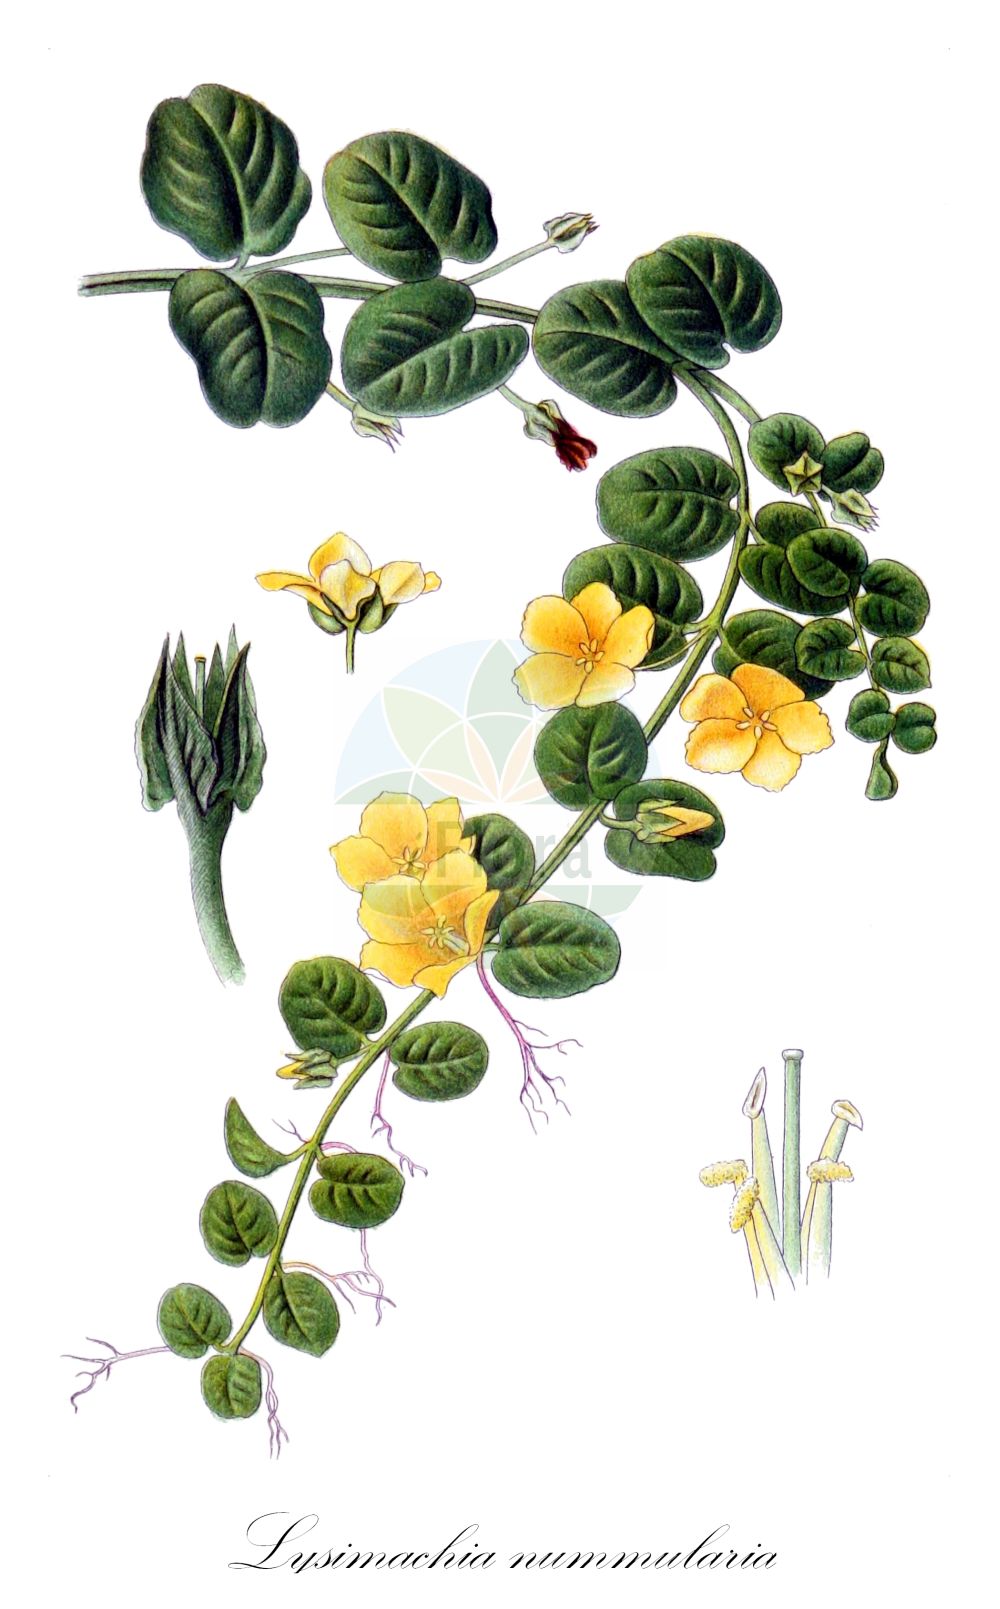 Historische Abbildung von Lysimachia nummularia (Pfennigkraut - Creeping-Jenny). Das Bild zeigt Blatt, Bluete, Frucht und Same. ---- Historical Drawing of Lysimachia nummularia (Pfennigkraut - Creeping-Jenny). The image is showing leaf, flower, fruit and seed.(Lysimachia nummularia,Pfennigkraut,Creeping-Jenny,Lysimachia nummularia,Pfennigkraut,Creeping-Jenny,Moneywort,Twopenny Grass,Lysimachia,Gilbweiderich,Yellow Loosestrife,Primulaceae,Schlüsselblumengewächse,Primrose family,Blatt,Bluete,Frucht,Same,leaf,flower,fruit,seed,Lindman (1901-1905))